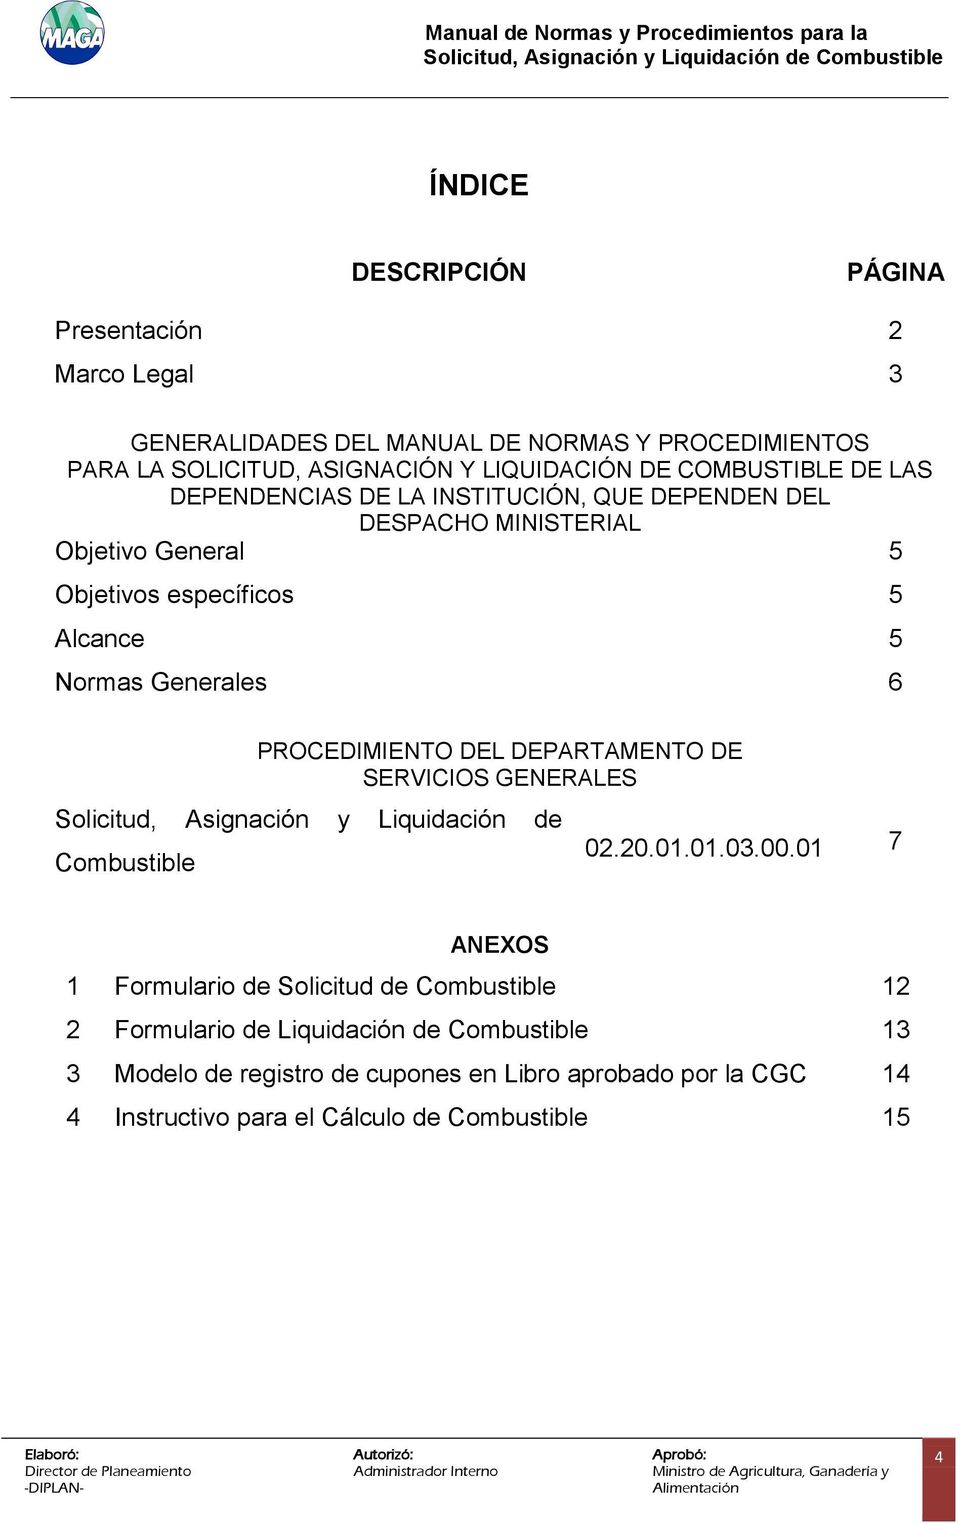 PROCEDIMIENTO DEL DEPARTAMENTO DE SERVICIOS GENERALES Solicitud, Asignación y Liquidación de Combustible 02.20.0.0.03.00.